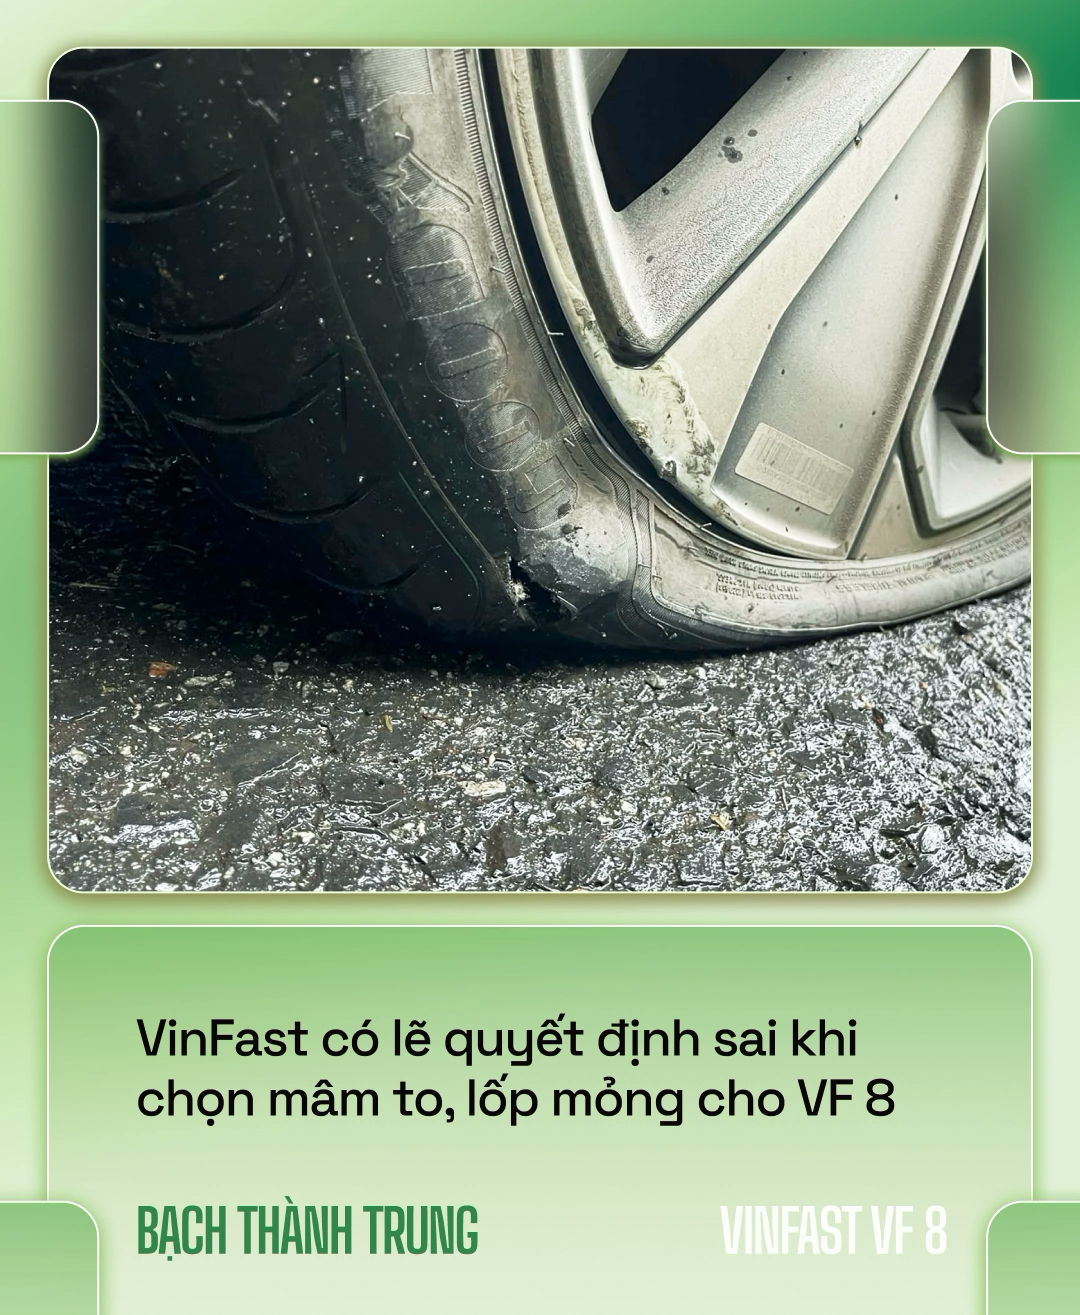 Nhà sáng lập VOZ lái VinFast VF 8 xuyên Việt hơn 6.600km: ‘Đổ đèo nhàn hơn xe xăng, nhưng vẫn cần hoàn thiện hơn’ - Ảnh 5.